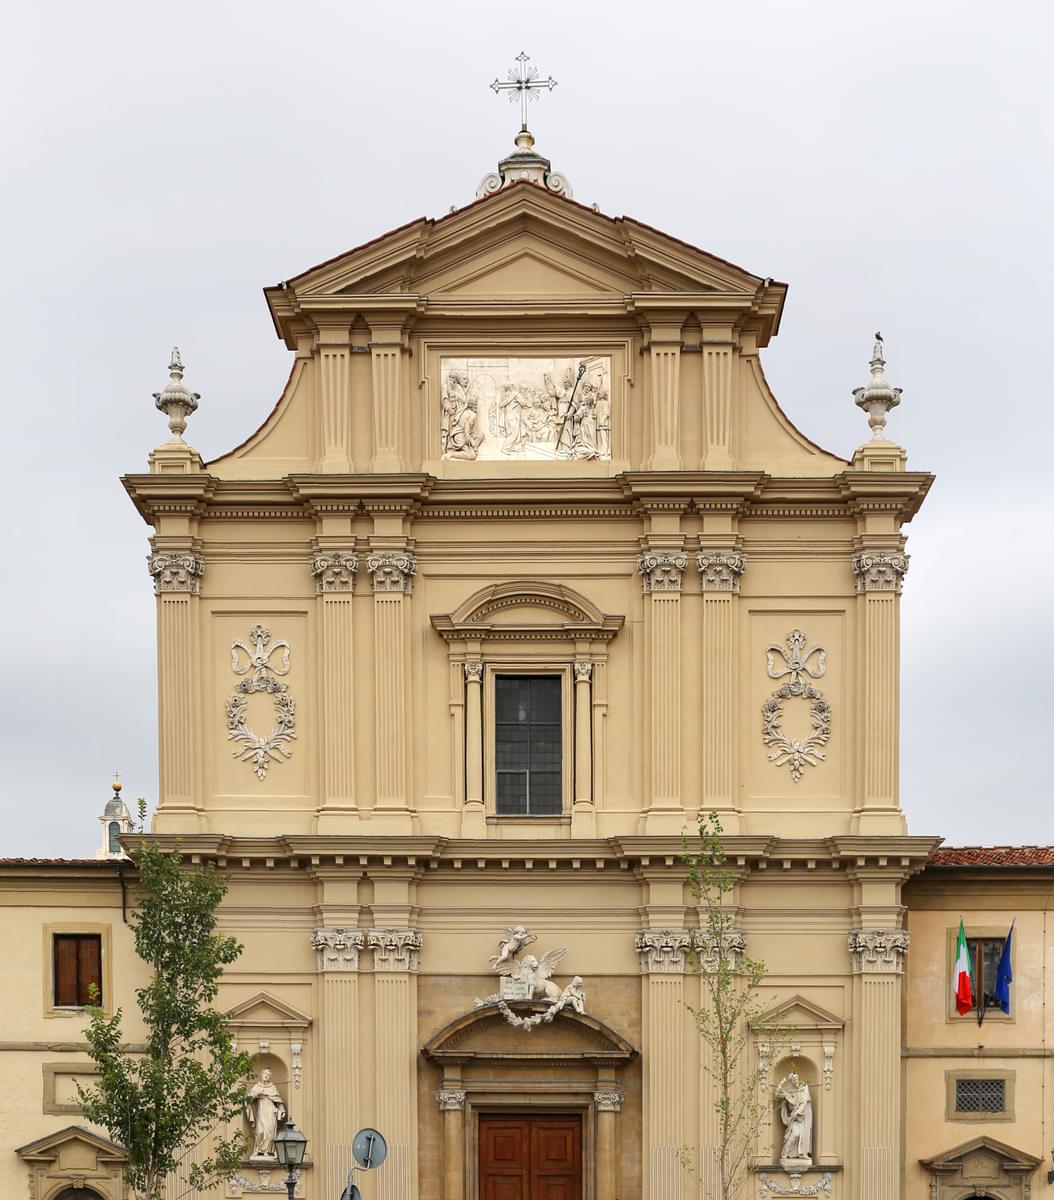 San Marco